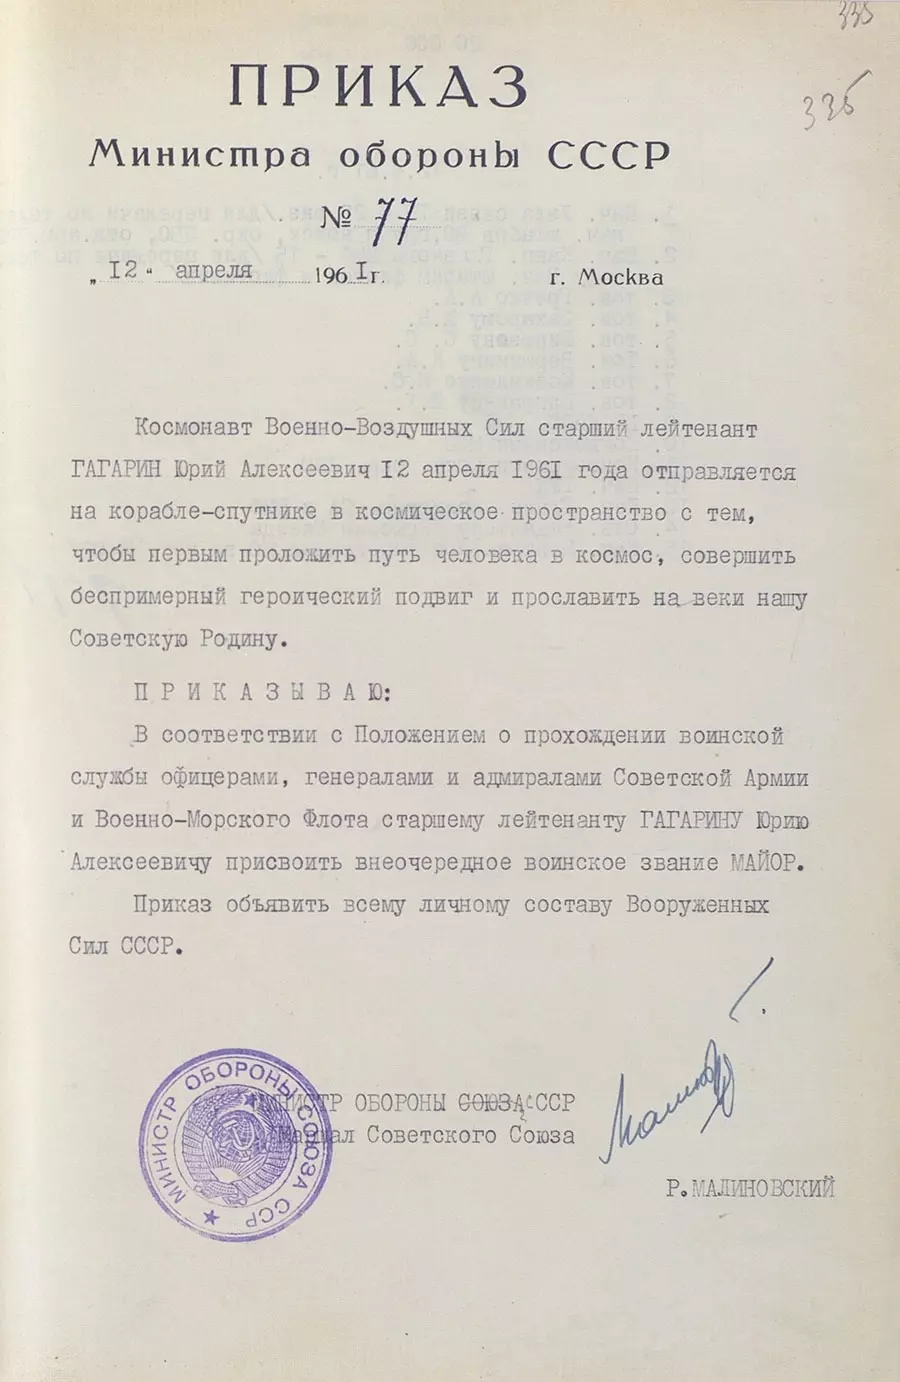 Документ о присвоении Юрию Гагарину внеочередного воинского звания.